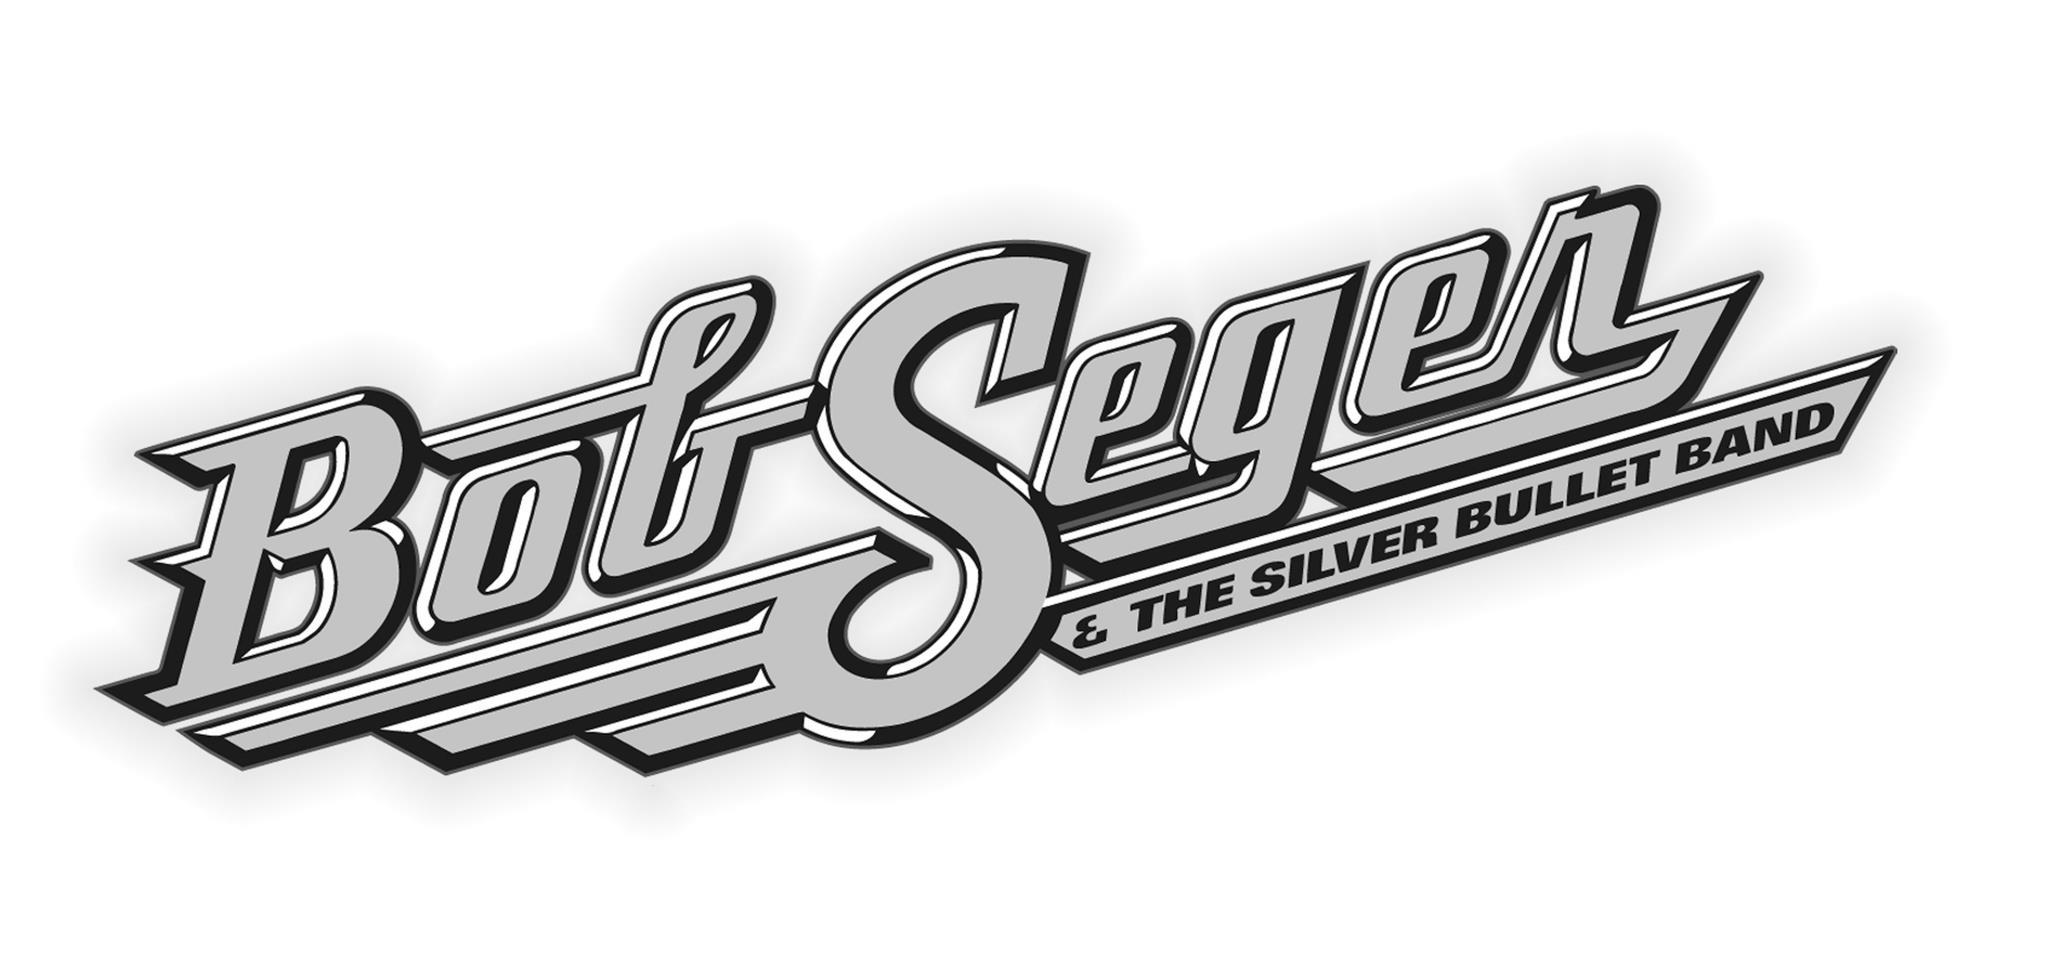 Bob Seger Logo - Bob Seger Sulver Bullet Band Logo